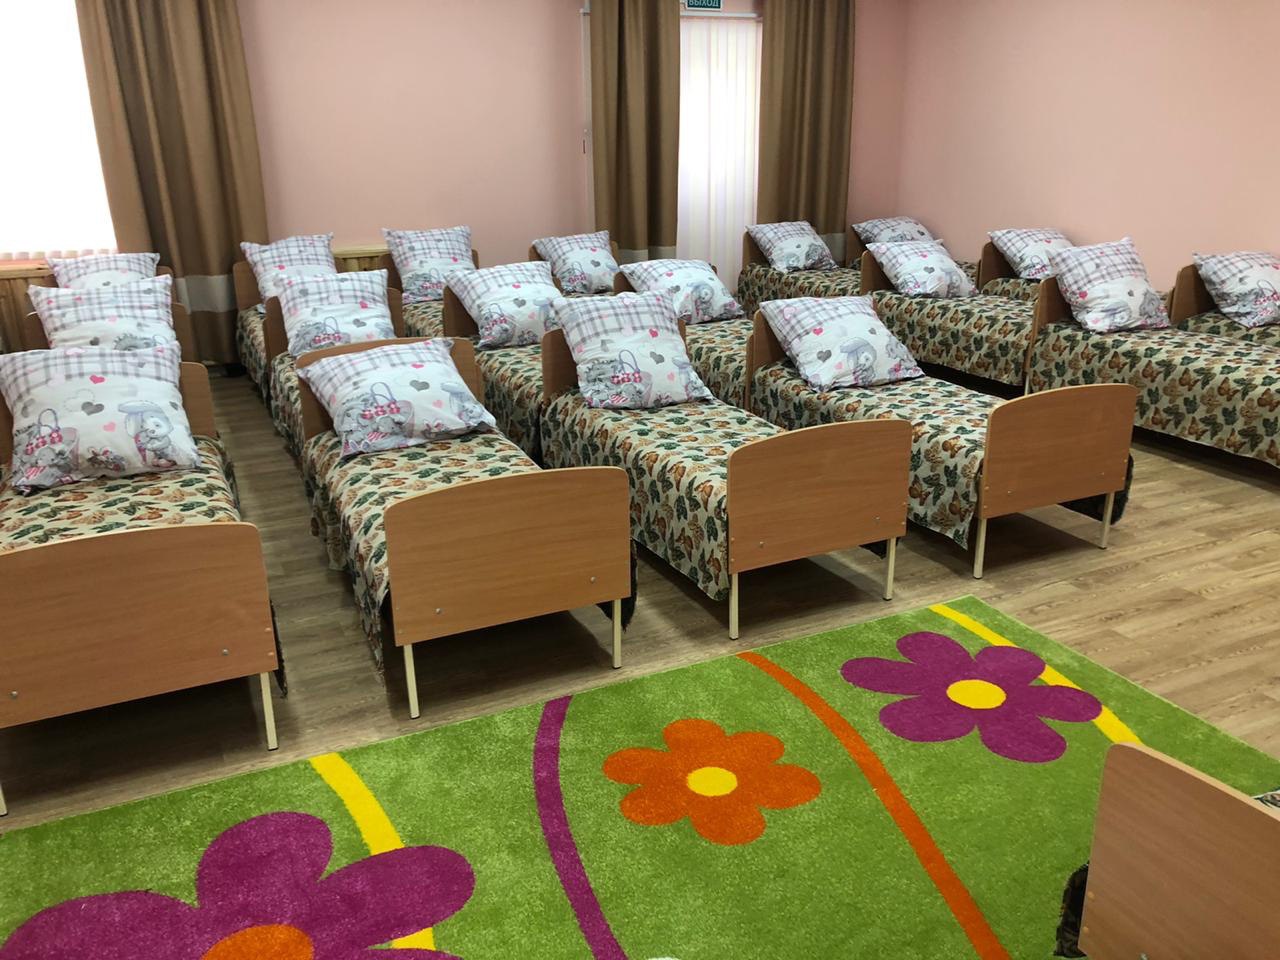 Стали известны подробности задымления в детском саду Омска #Новости #Общество #Омск